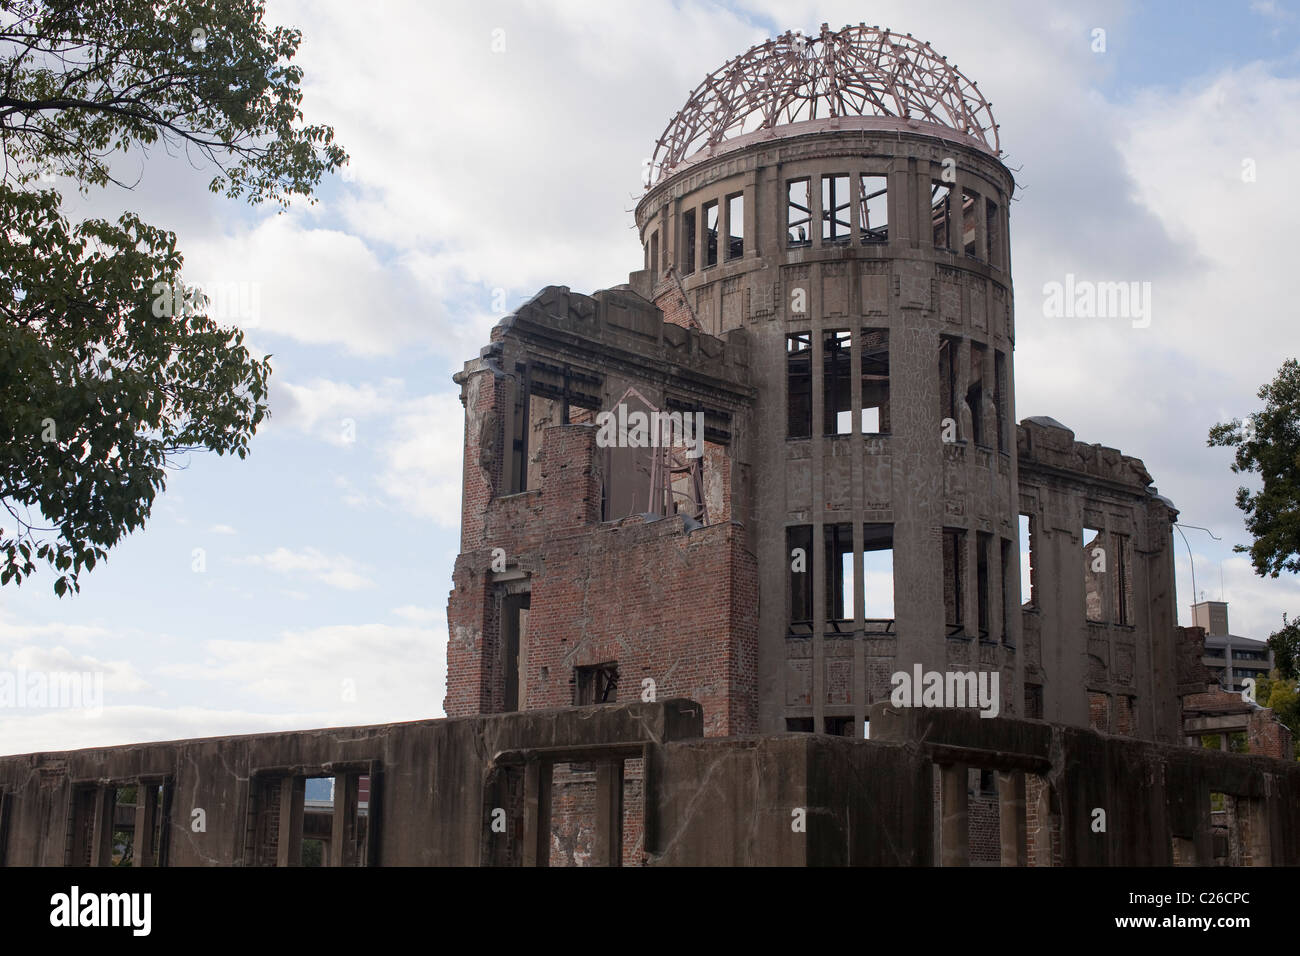 Genbaku Dome (Atomic Bomb Dome), Hiroshima Peace Memorial Park, Hiroshima, Japan Stock Photo